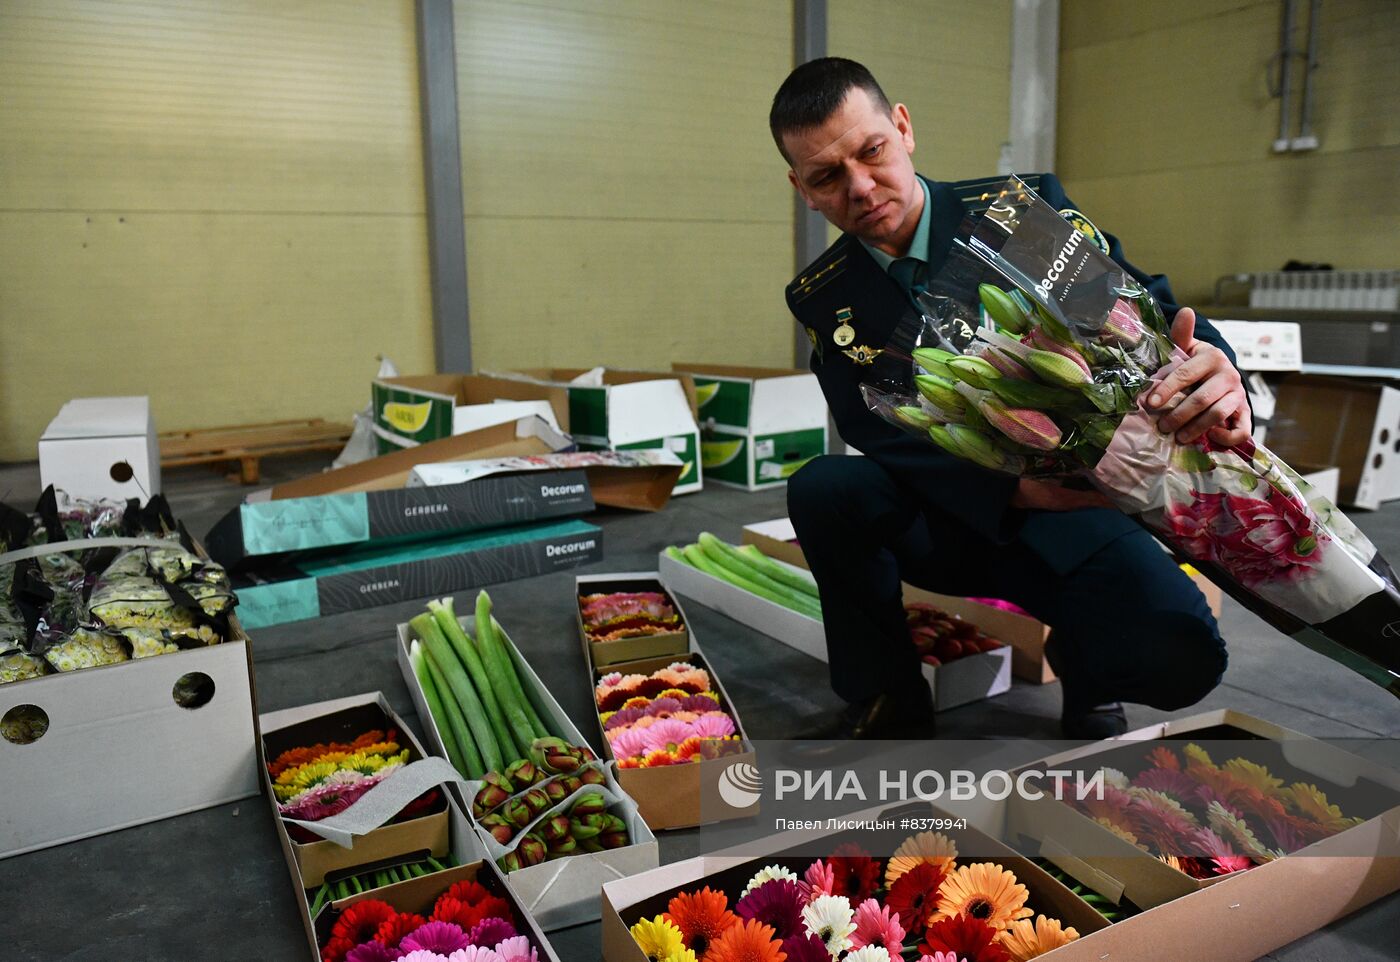 Поставка цветов к 8 Марта в Екатеринбург